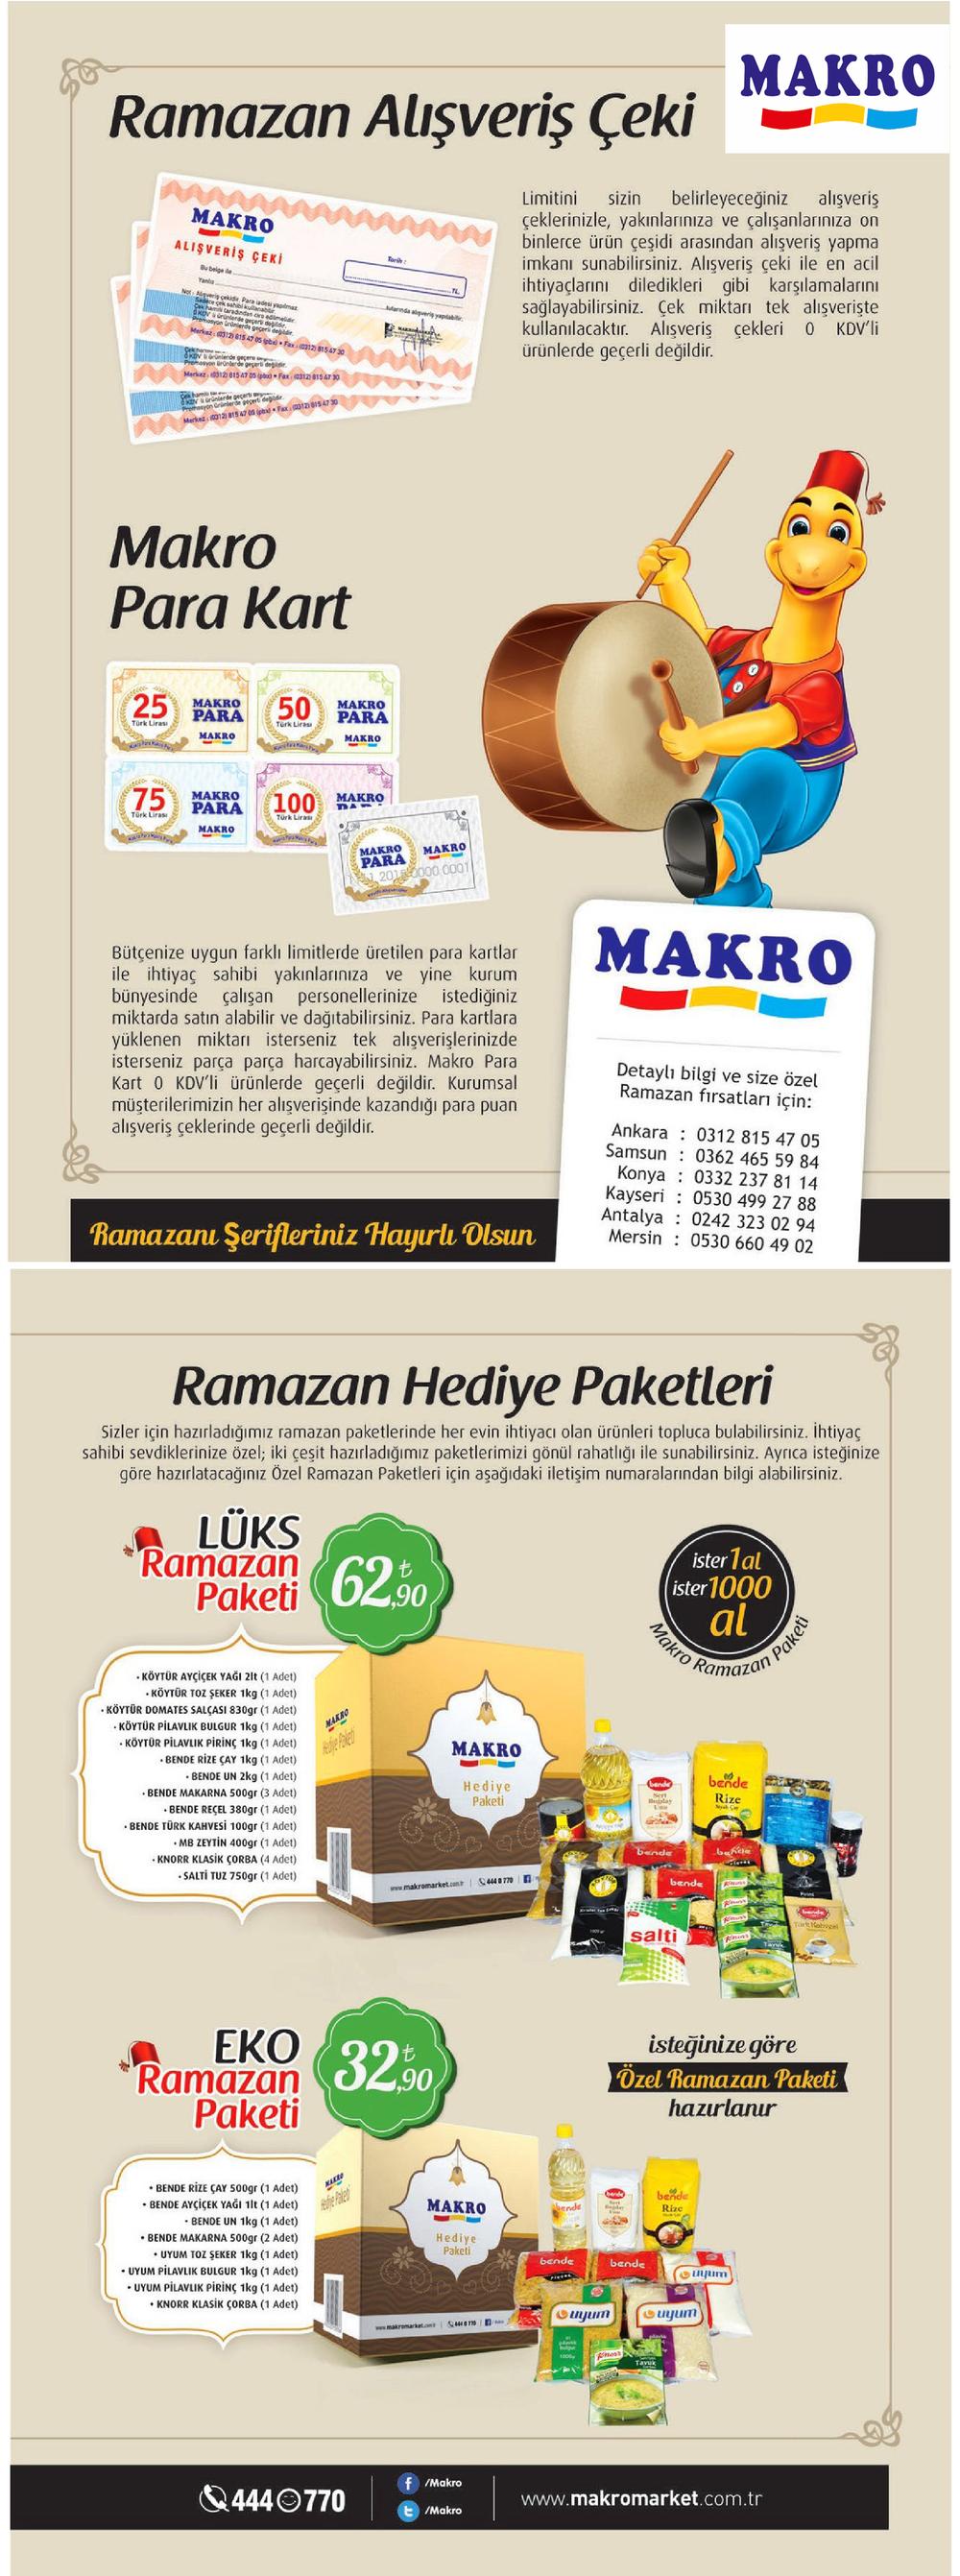 makro-market-ramazan-kumanya-paketi